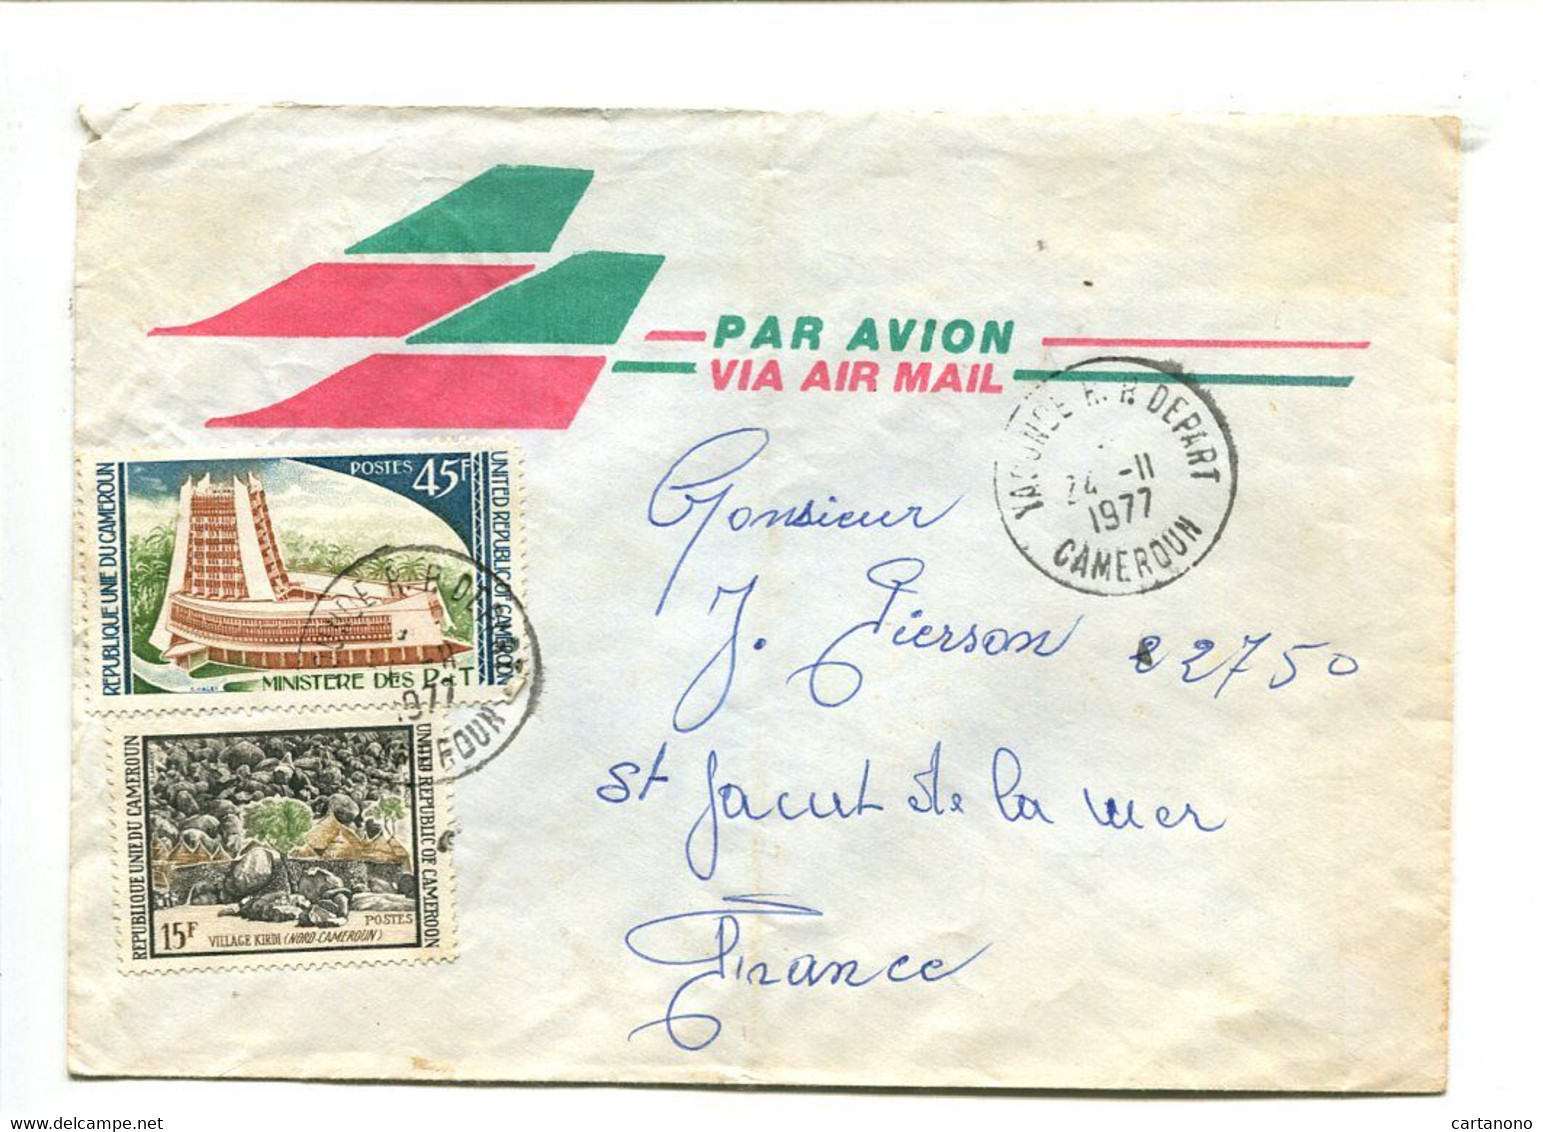 CAMEROUN Yaoude R.P. Départ 1977 - Affranchissement Sur Lettre Par Avion - Kamerun (1960-...)